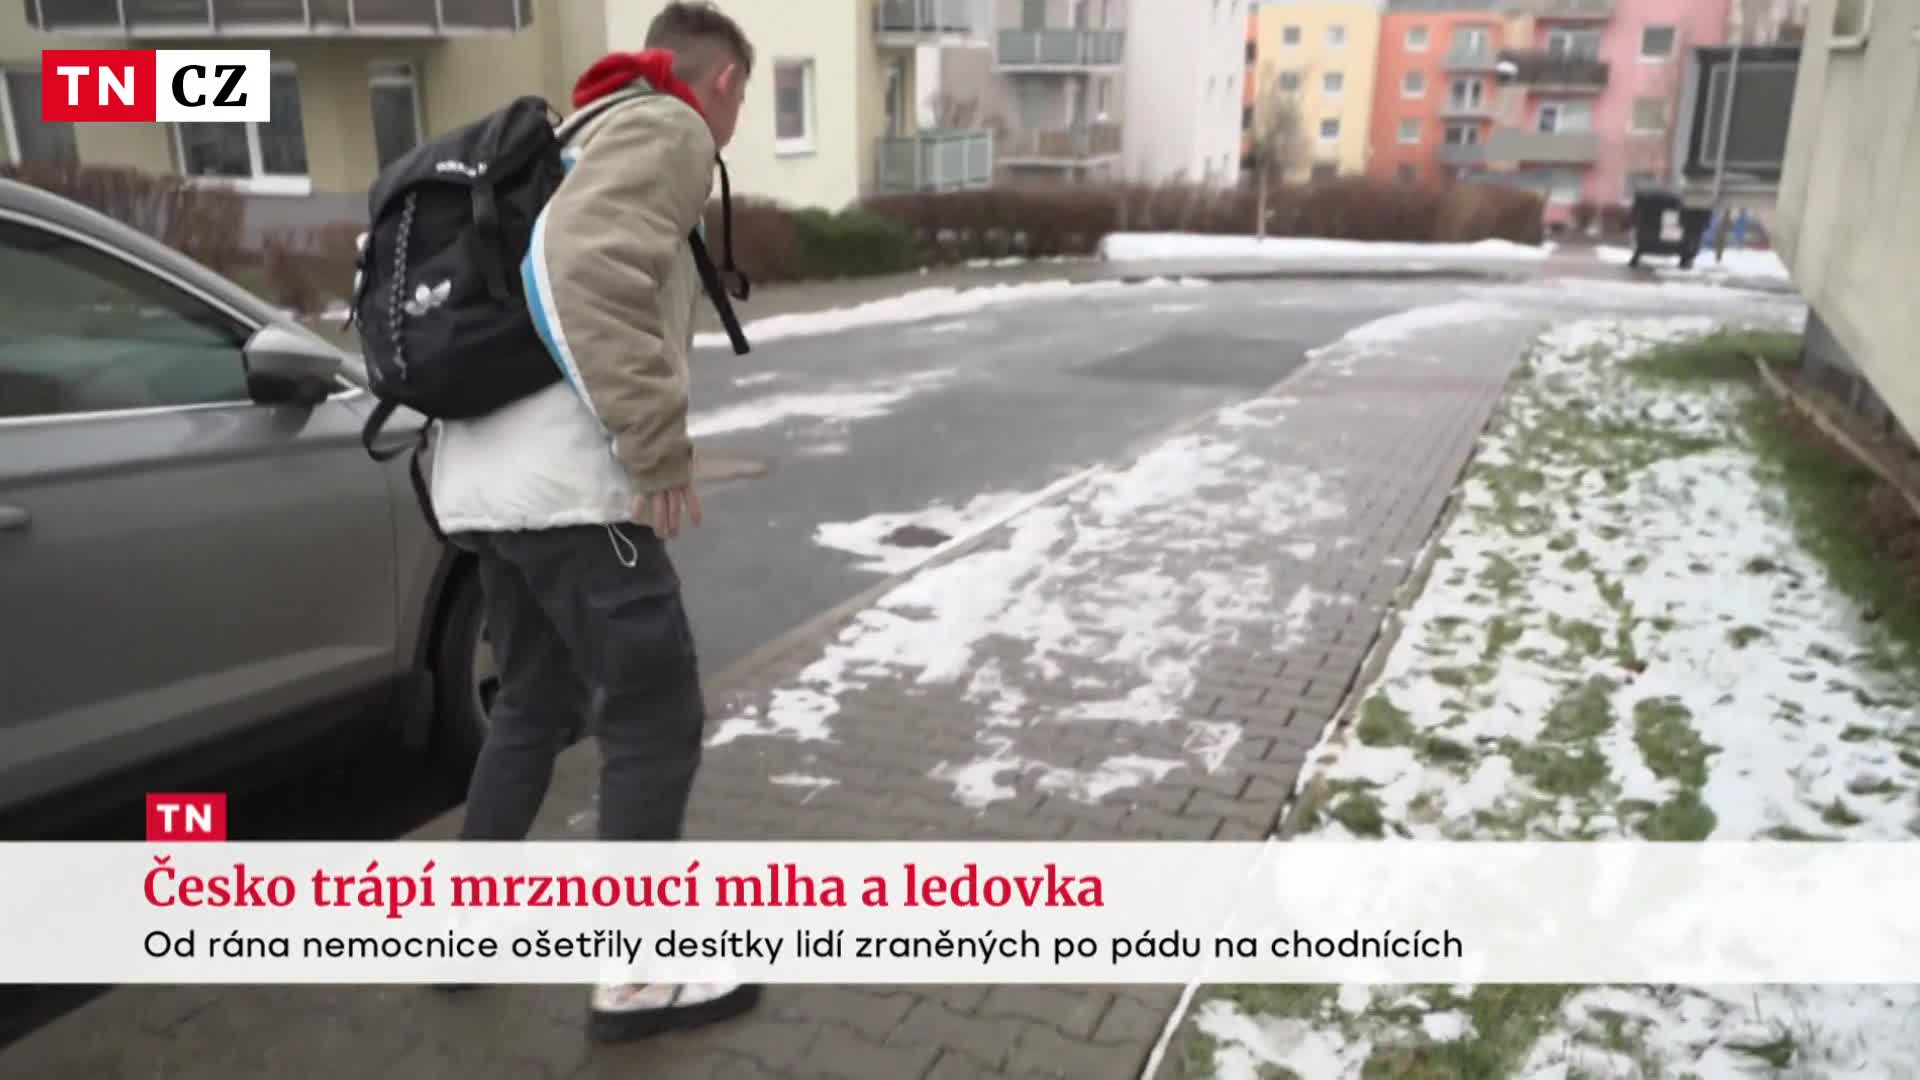 Česko trápí ledovka. Desítky lidí po pádech skončilo v nemocnici